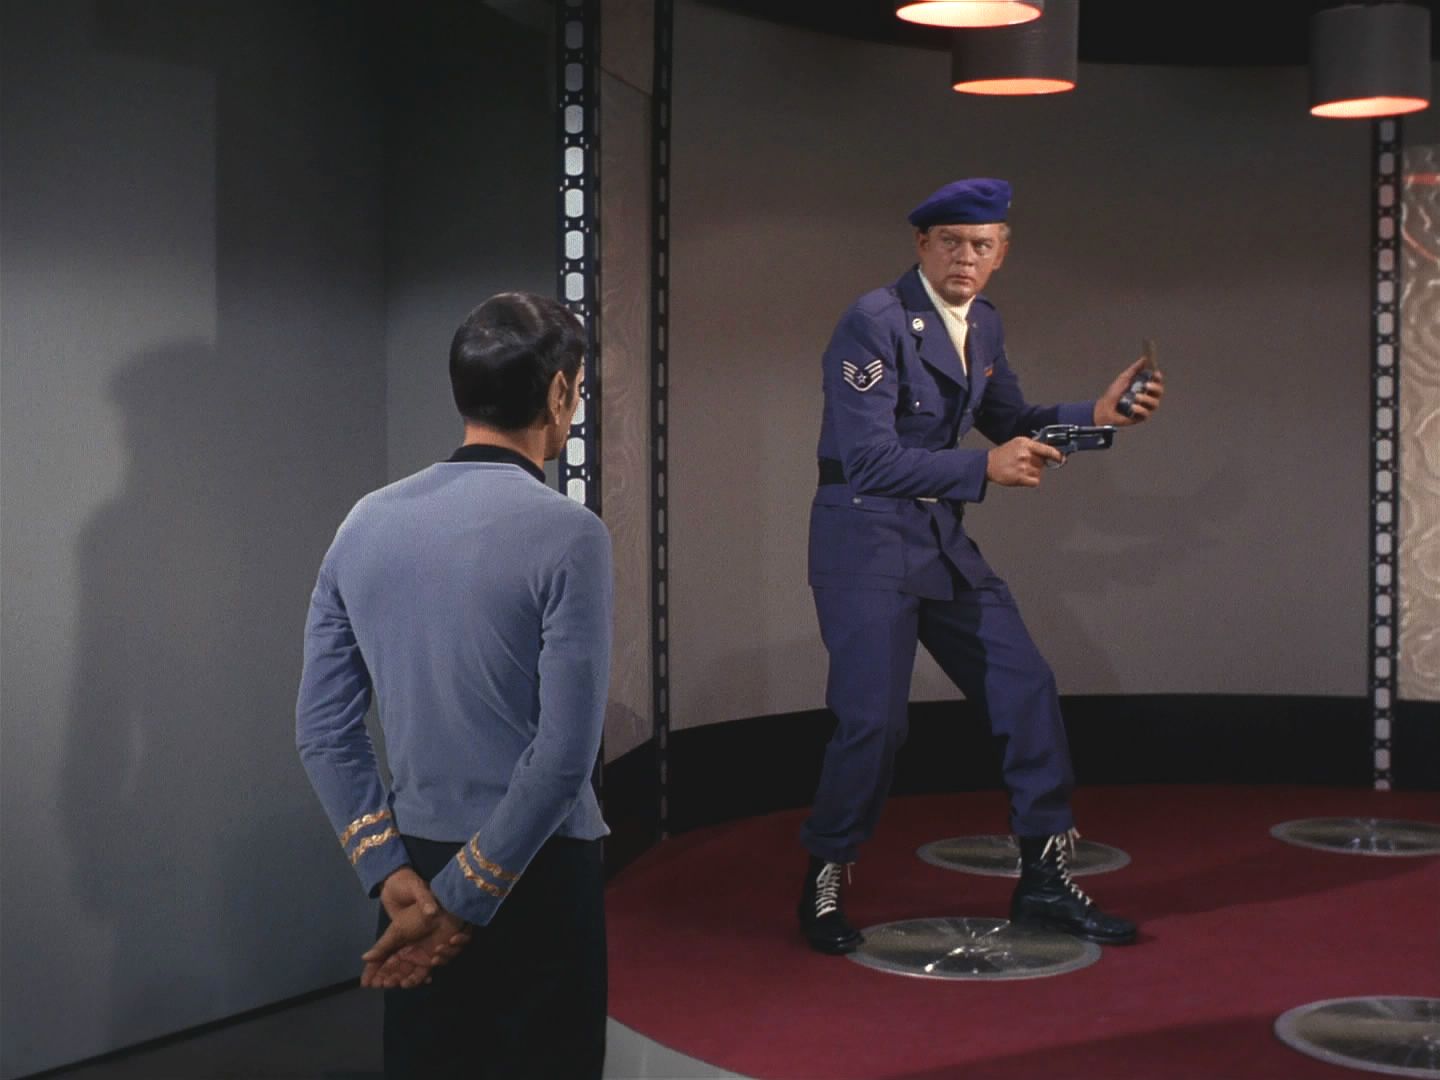 Chudák seržant omylem zapnul nouzový signál na komunikátoru a byl přenesen na Enterprise místo výsadku. Nebude těžké ho uhlídat, ztuhnul překvapením.